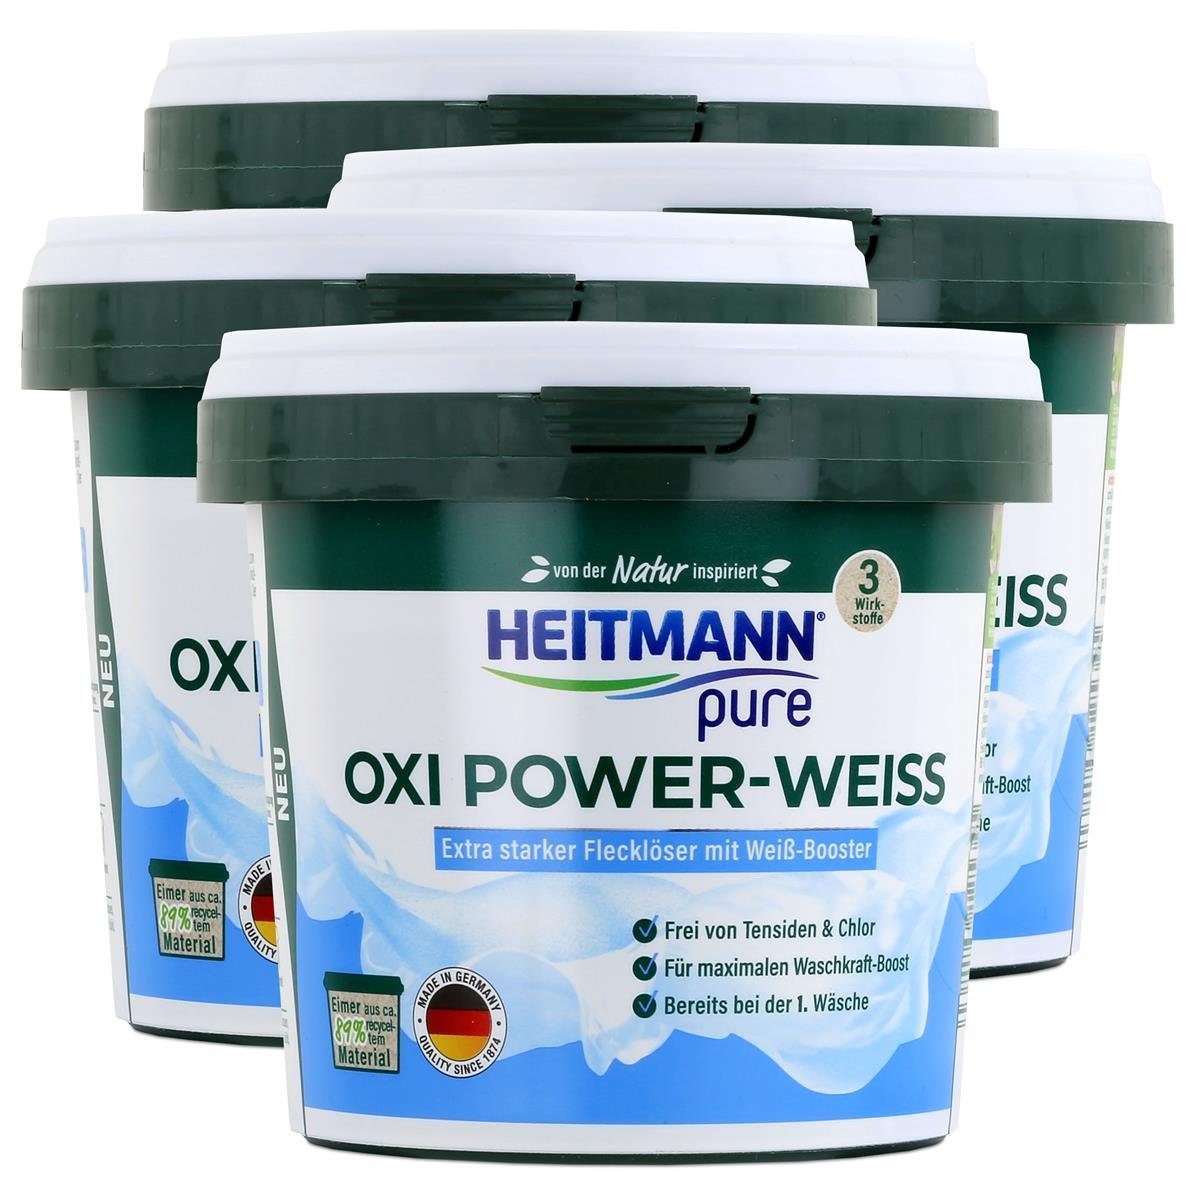 500g Heitmann Vollwaschmittel - HEITMANN Weiß-Booster Oxi Power-Weiss pure Flecklöser (4er mit